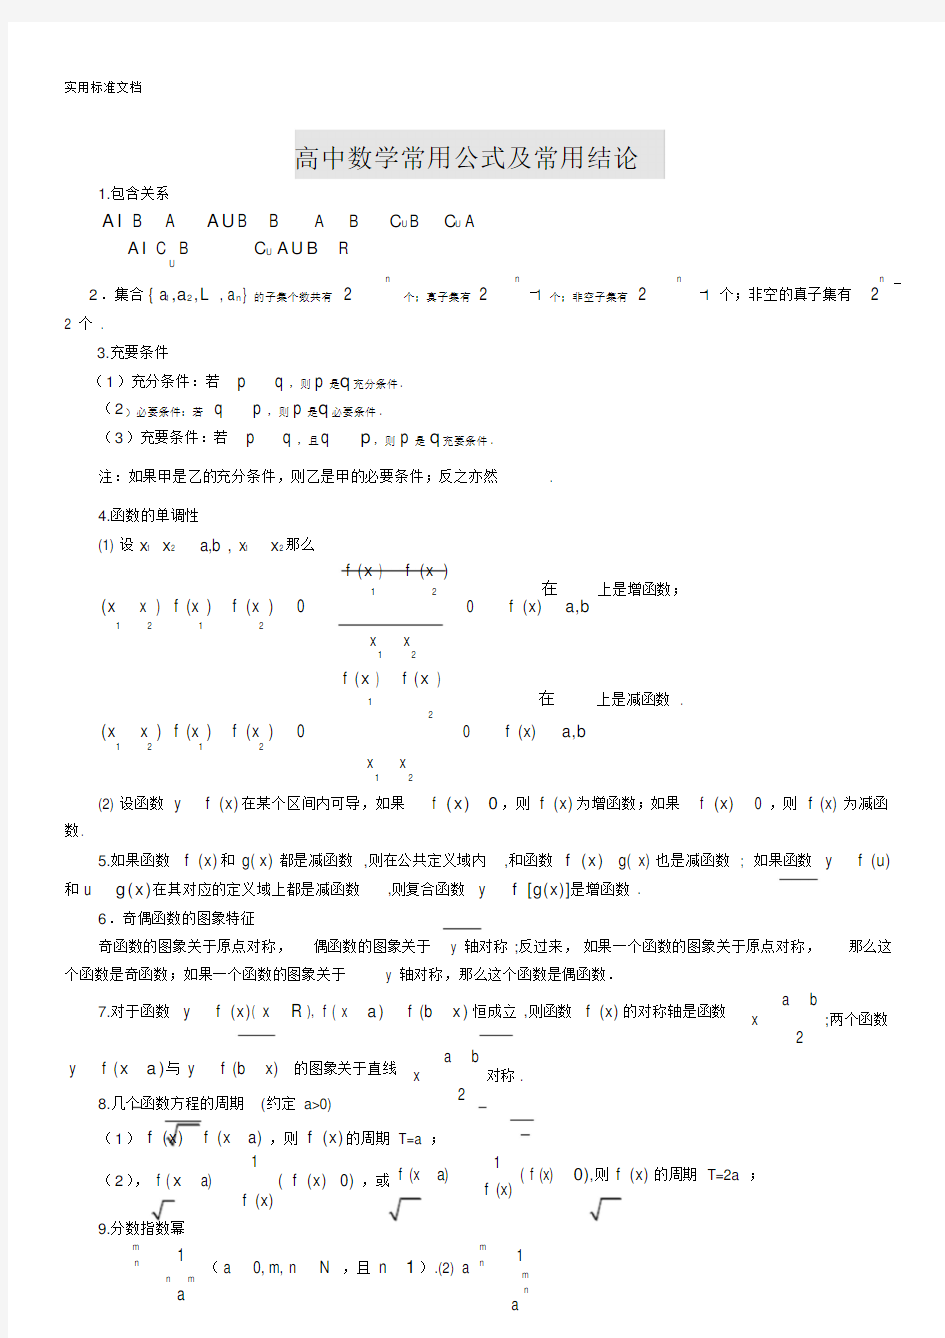 高中数学公式大全(完整版)(20210127120734)